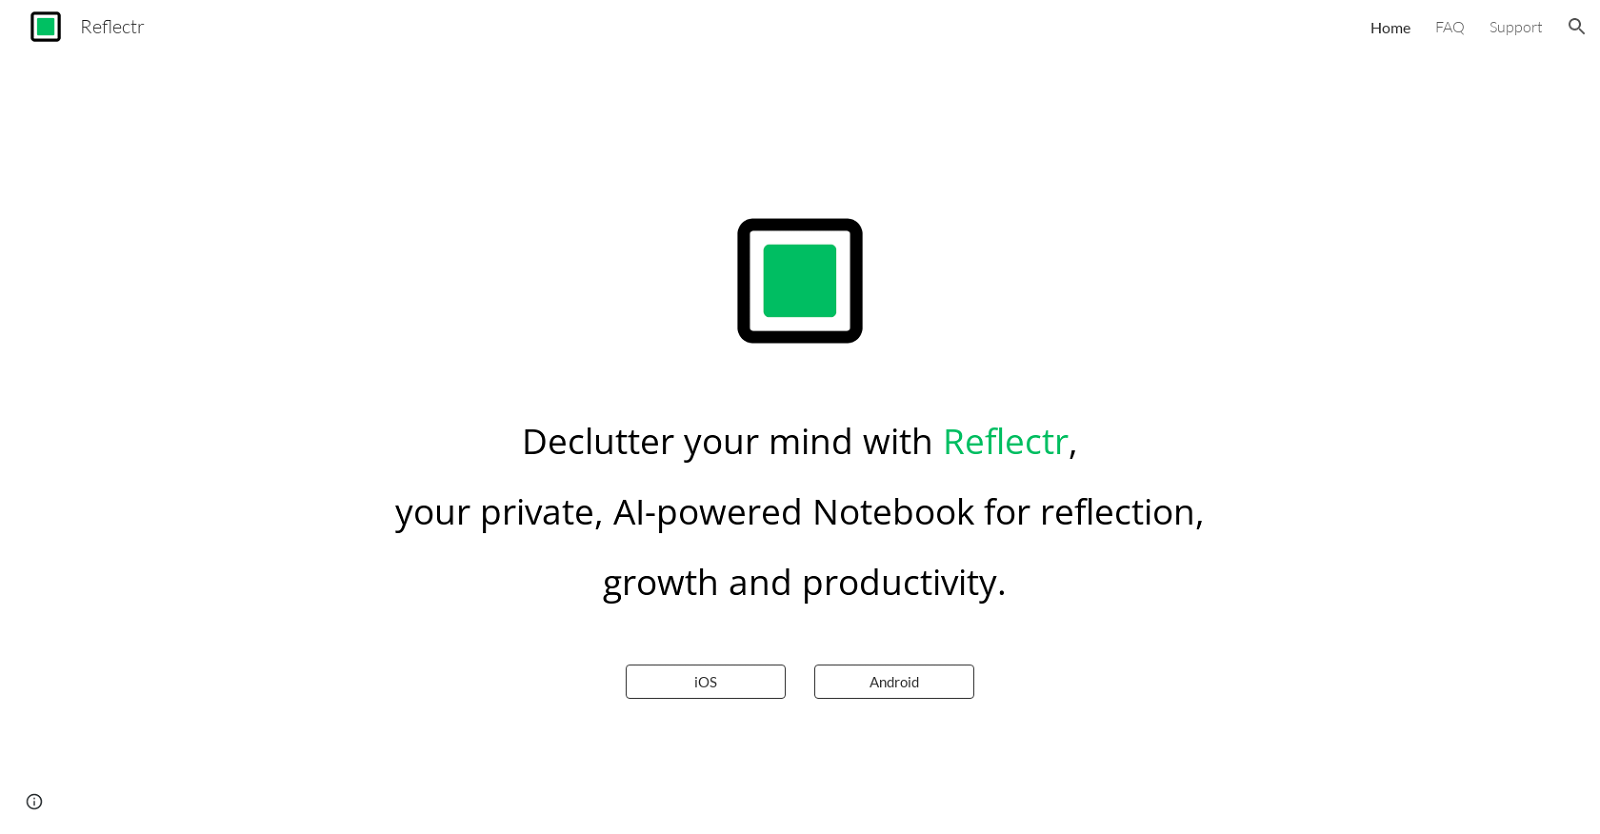 Reflectr website